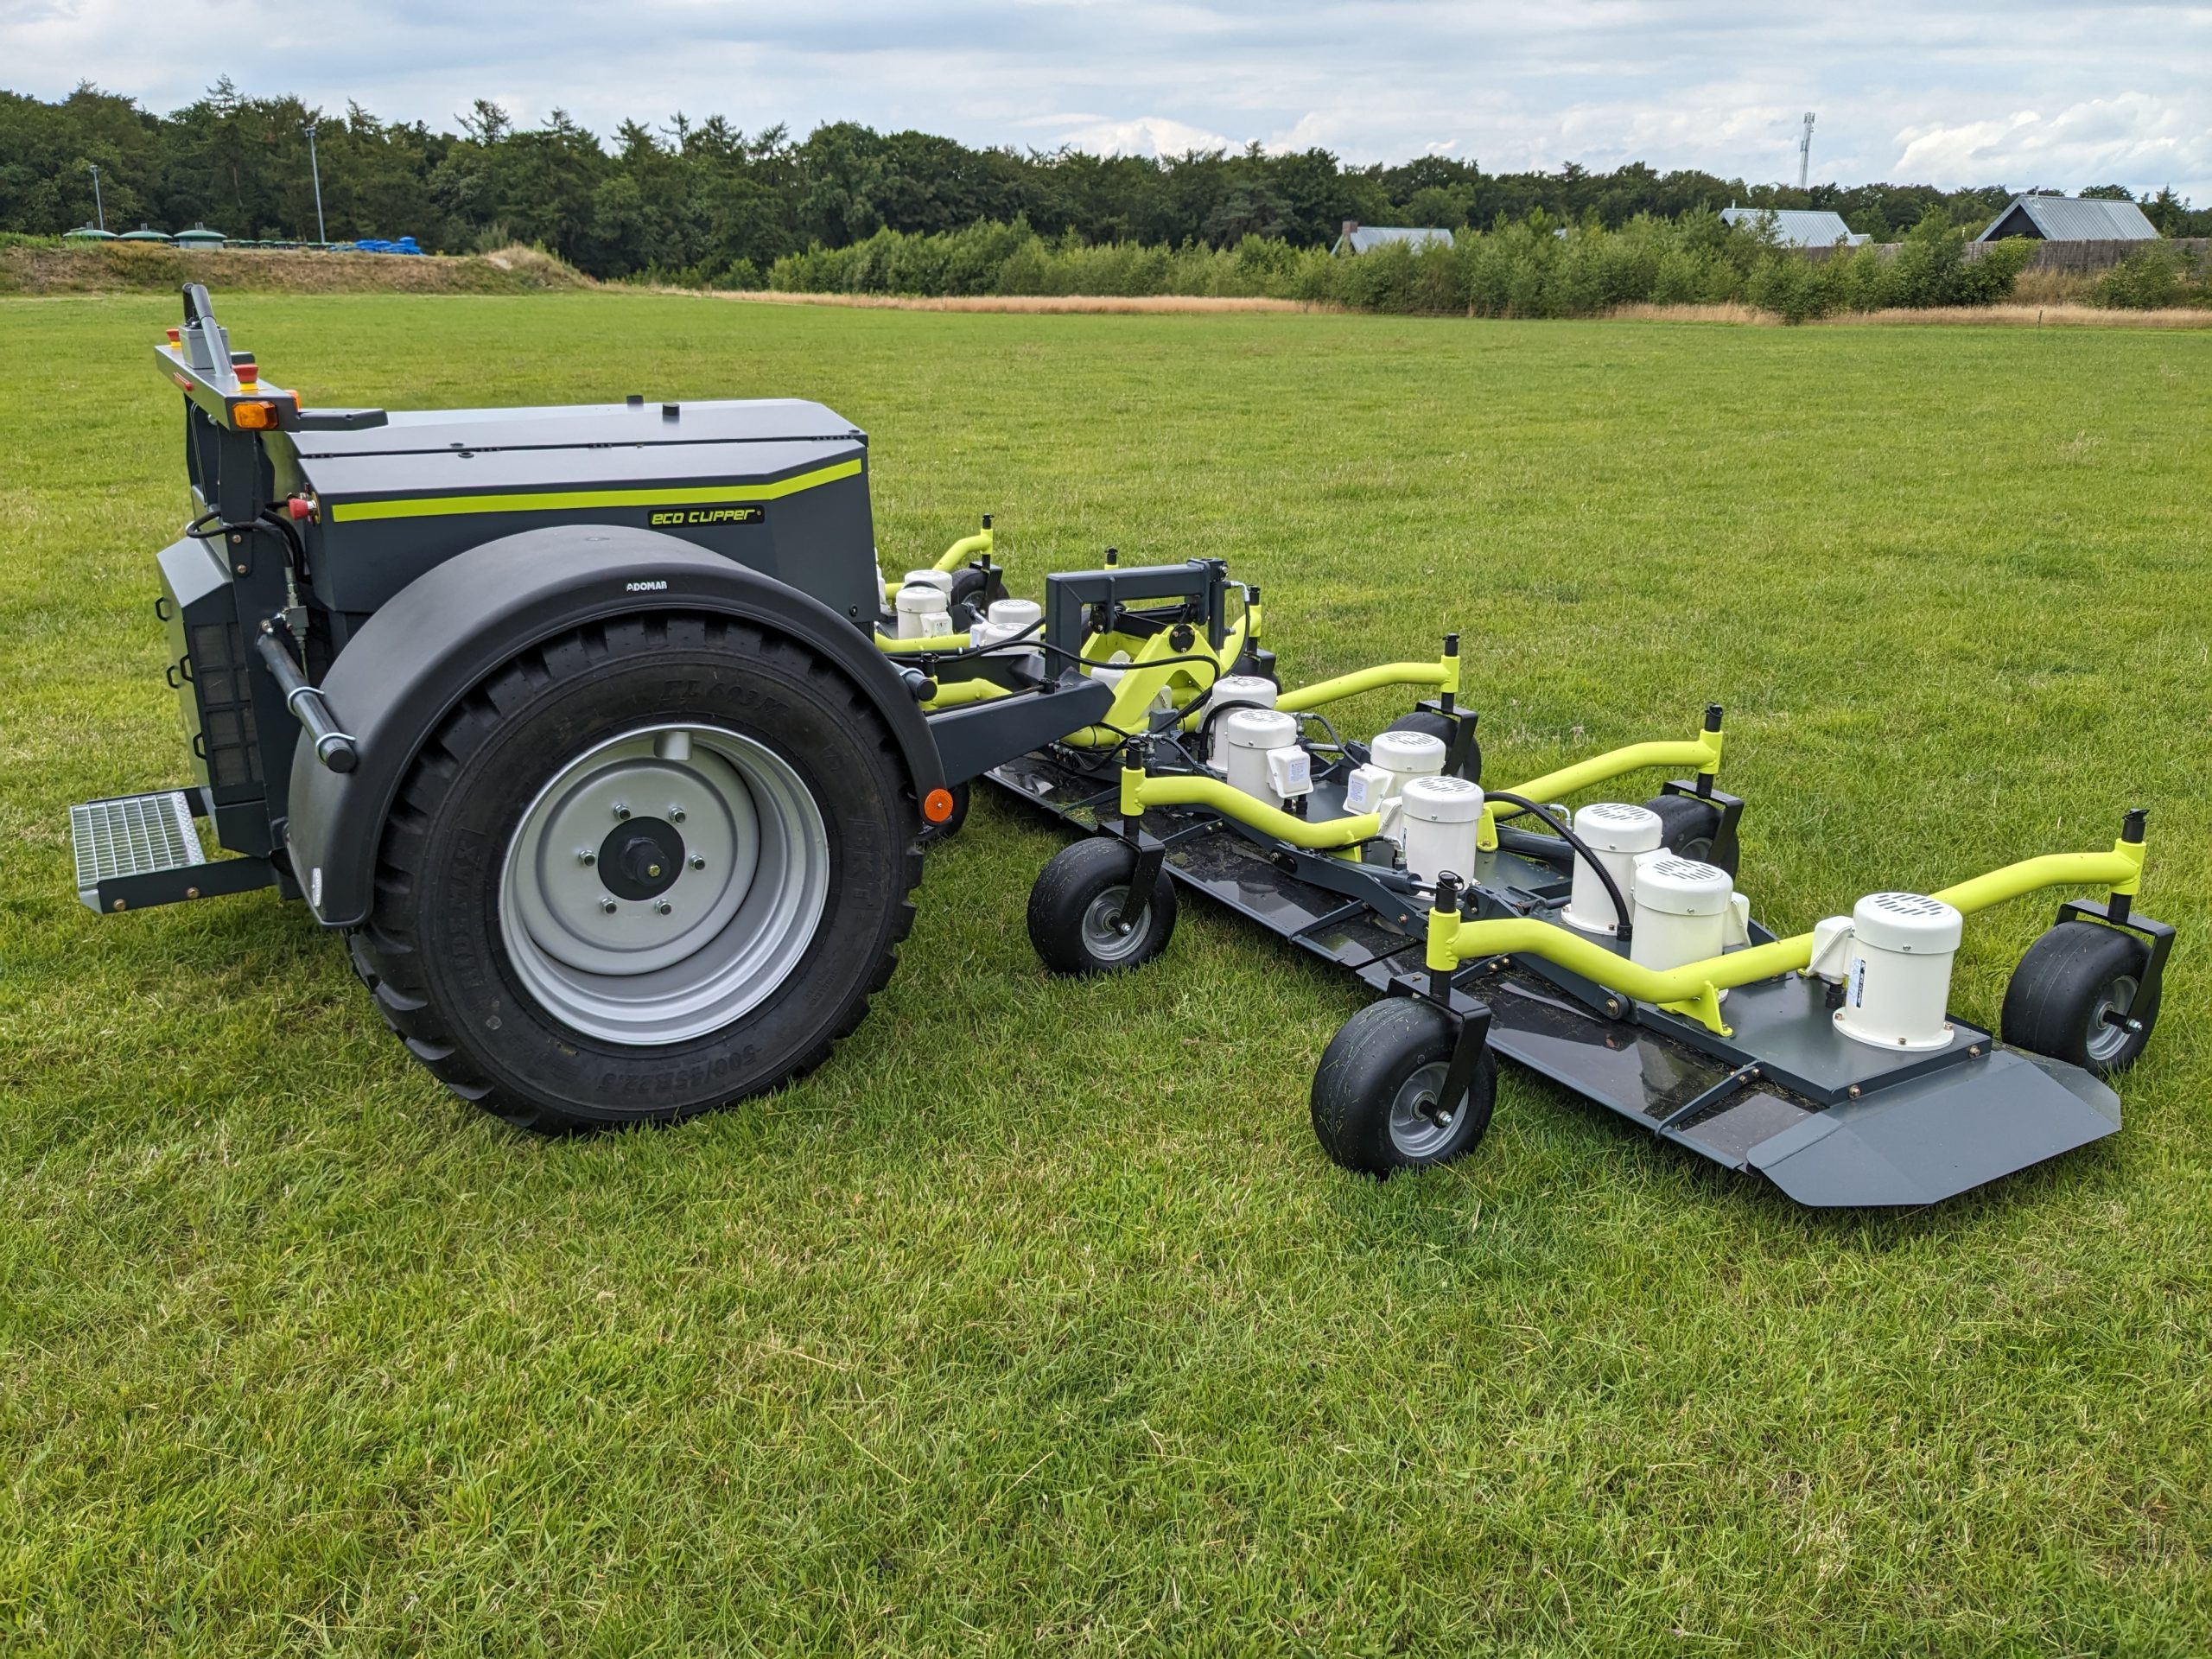 Eco Clipper autonomous mower with a 513 cm wide mowing deck